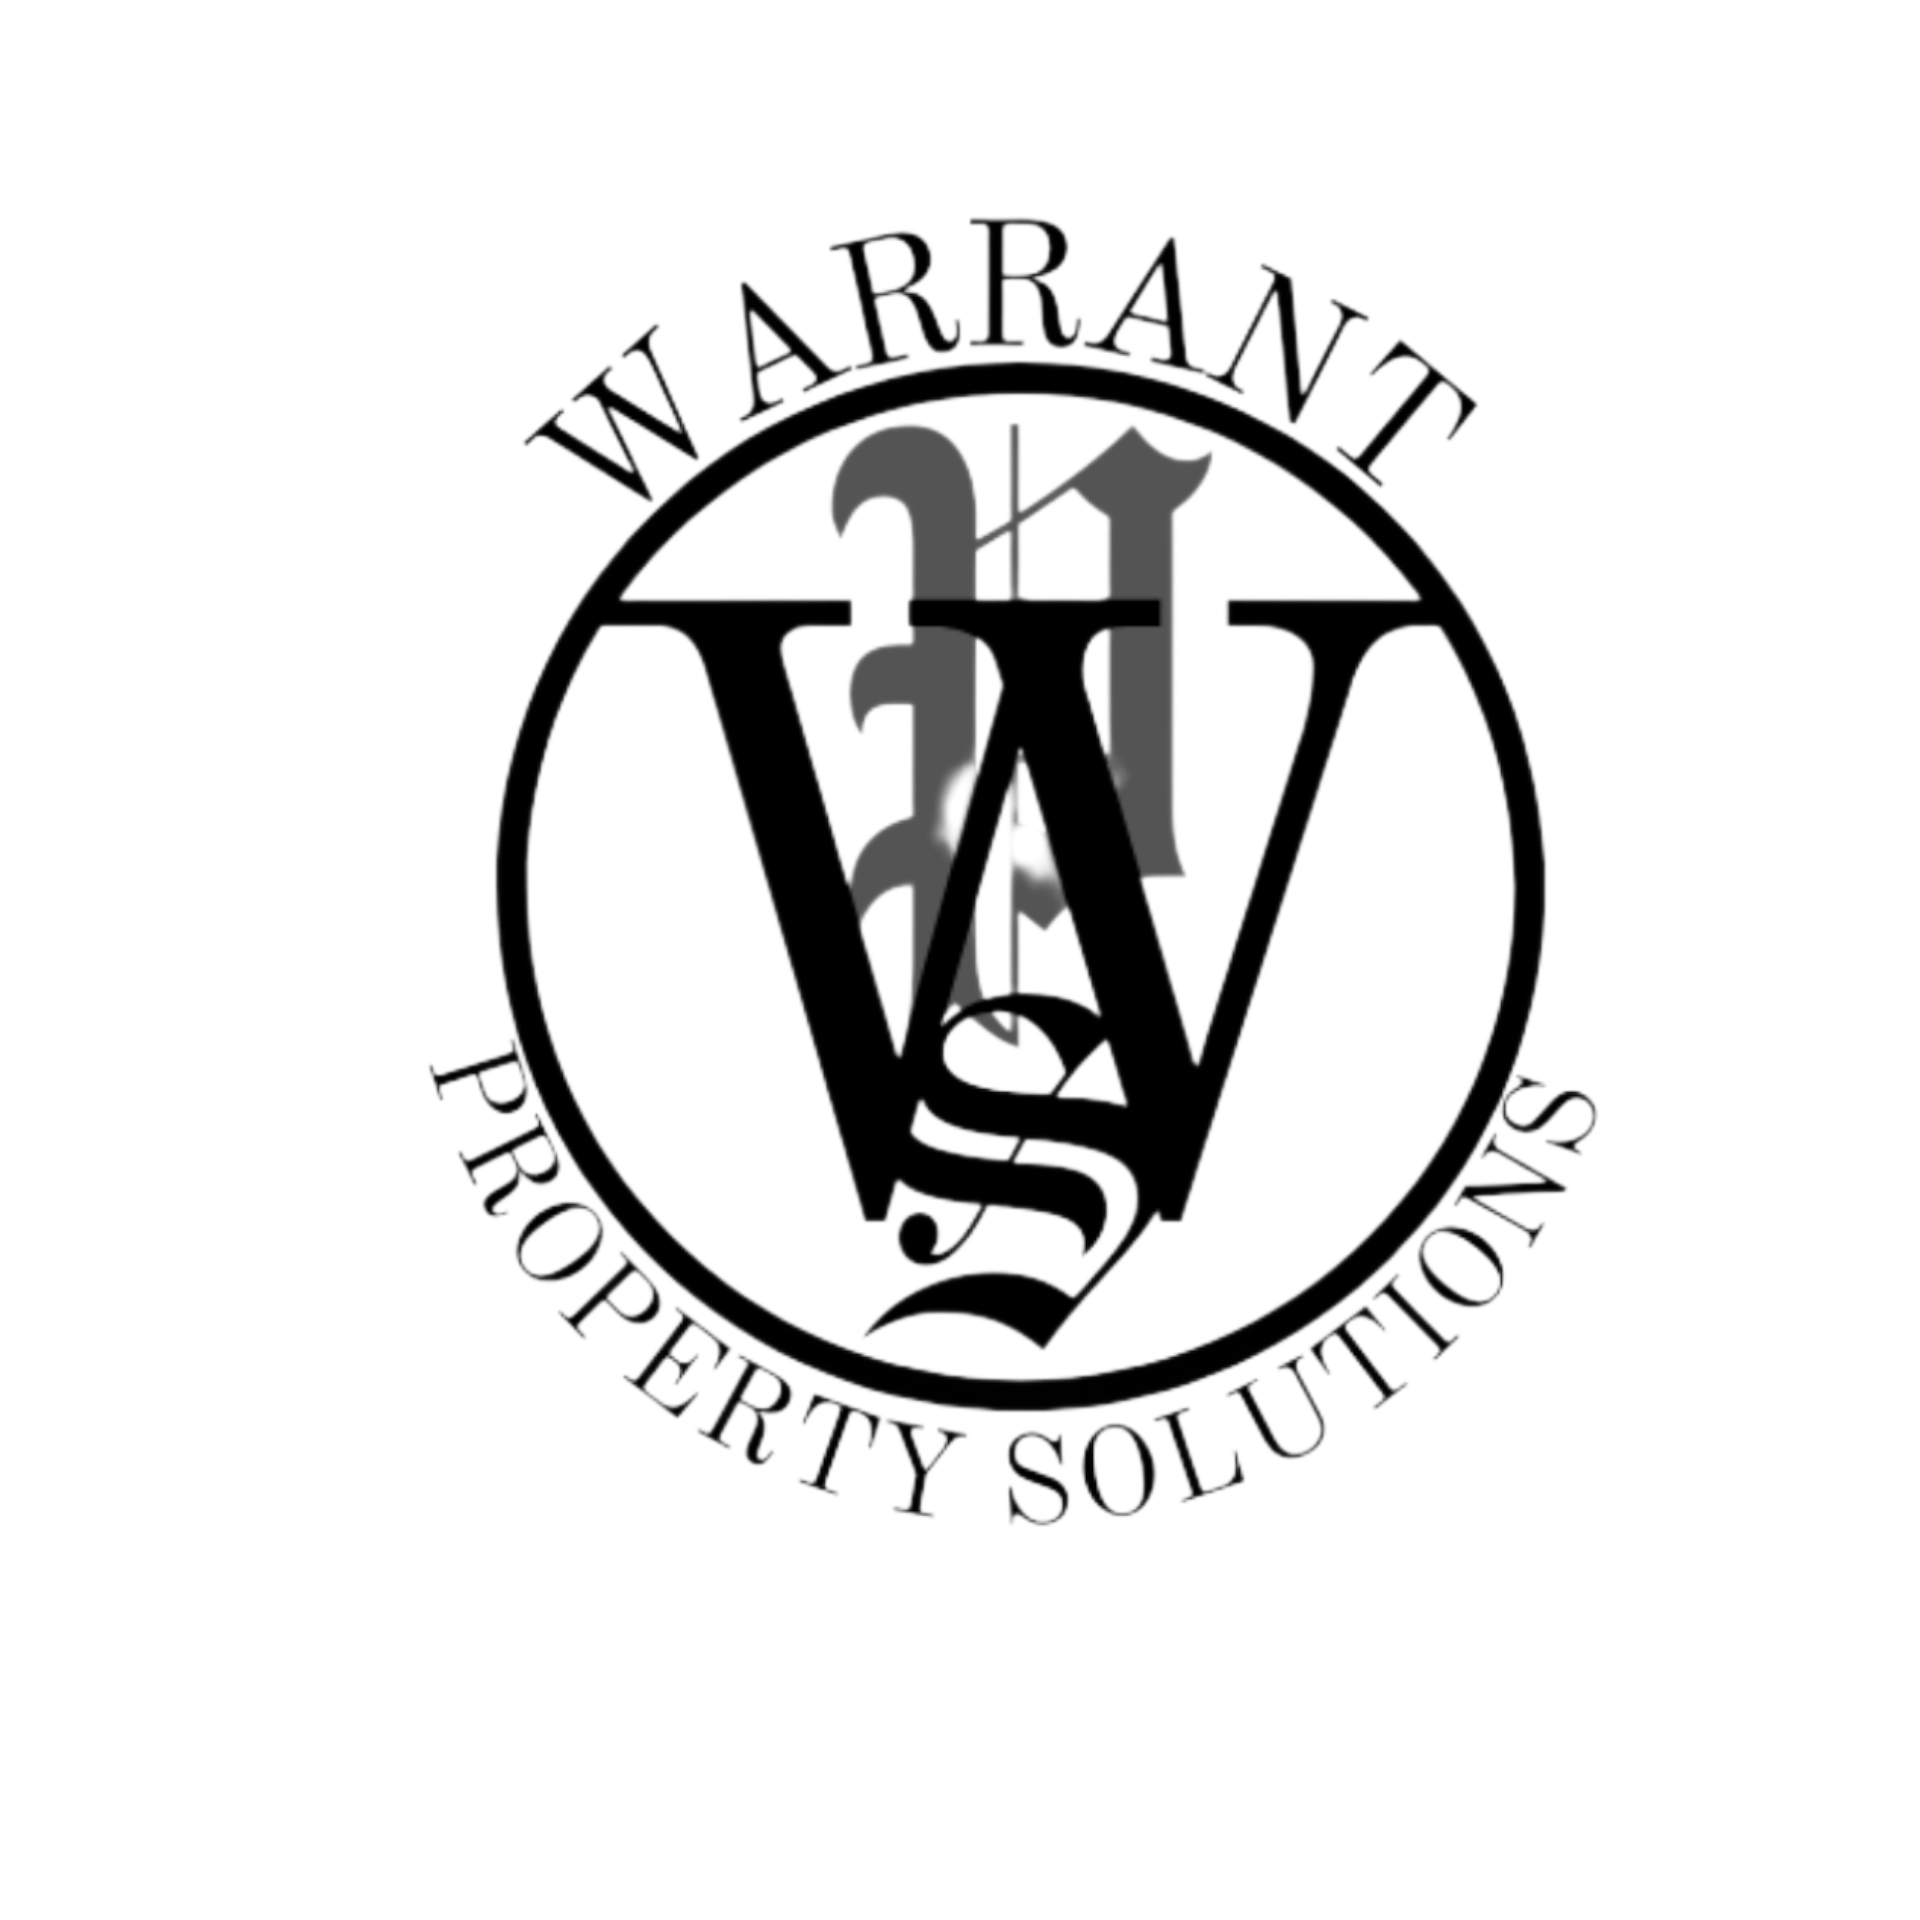 Warrant Property Solutions LLC